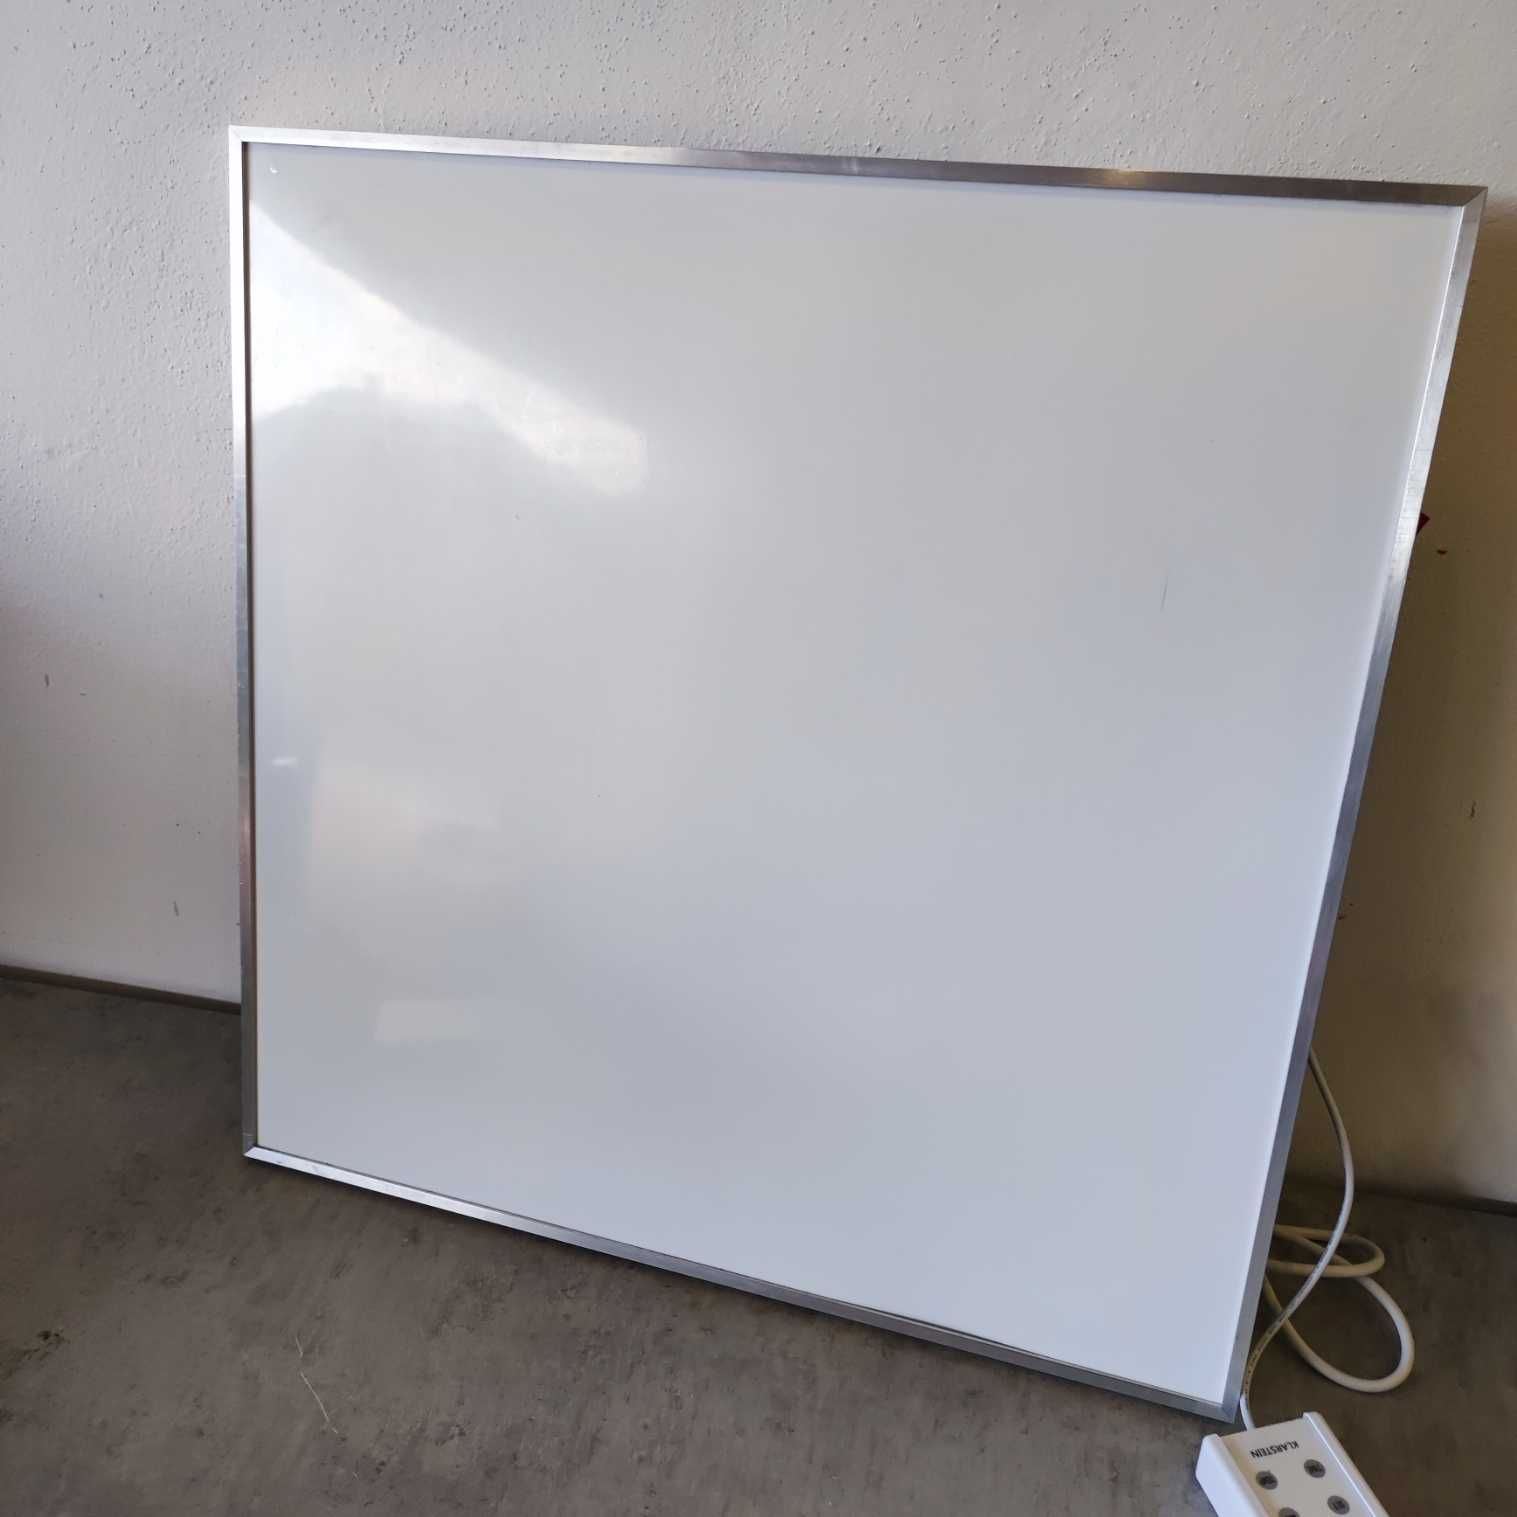 Grzejnik panel Wonderwall 36 promiennik na podczerwień 60 x 60cm 360 W